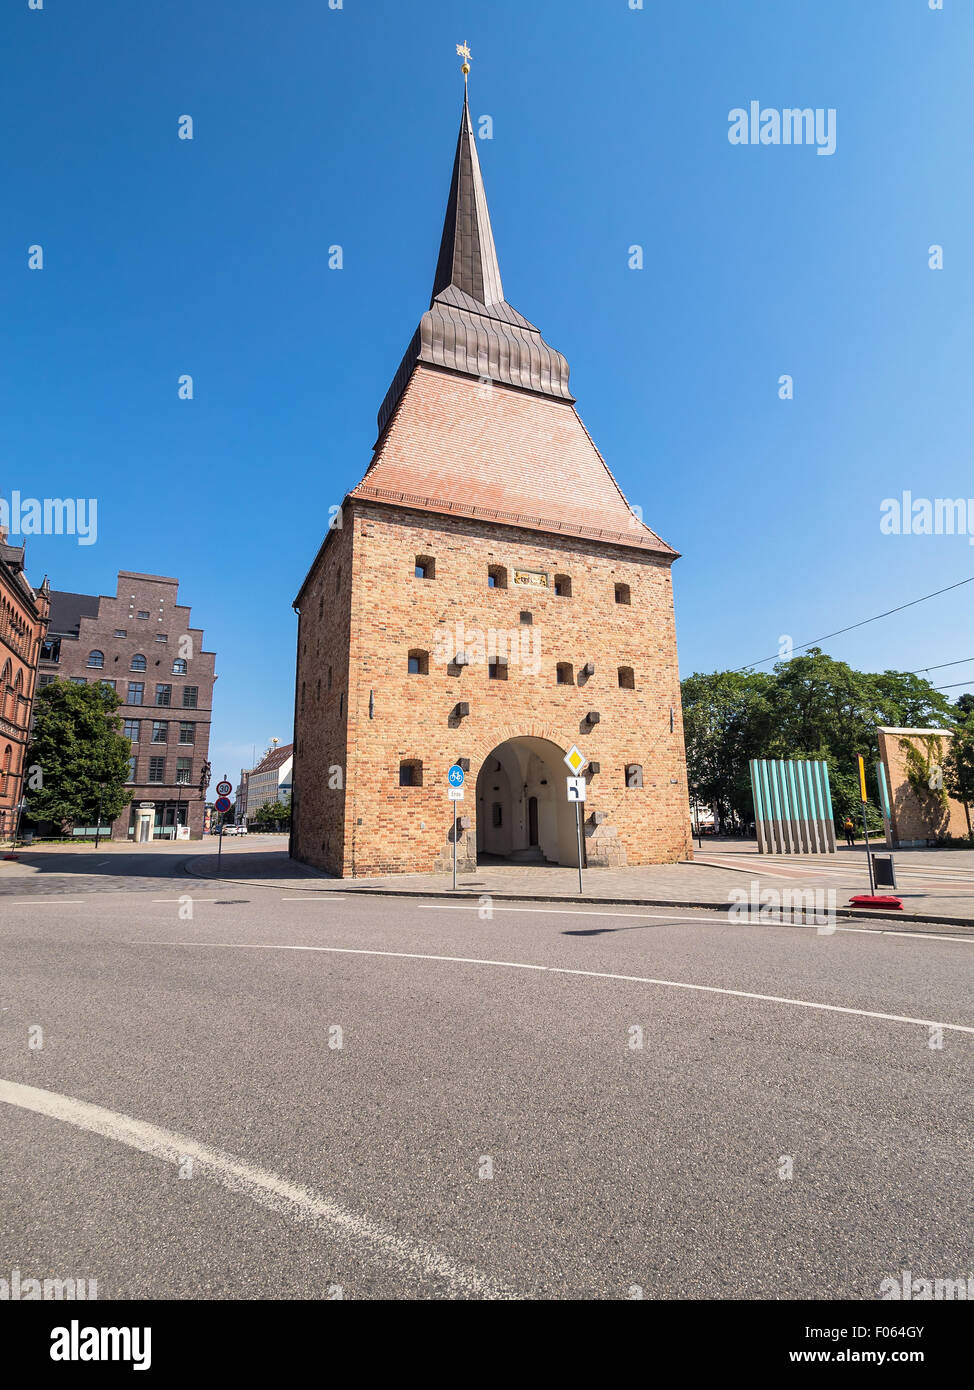 Historische Gebäude in Rostock (Deutschland) mit blauem Himmel Stockfoto